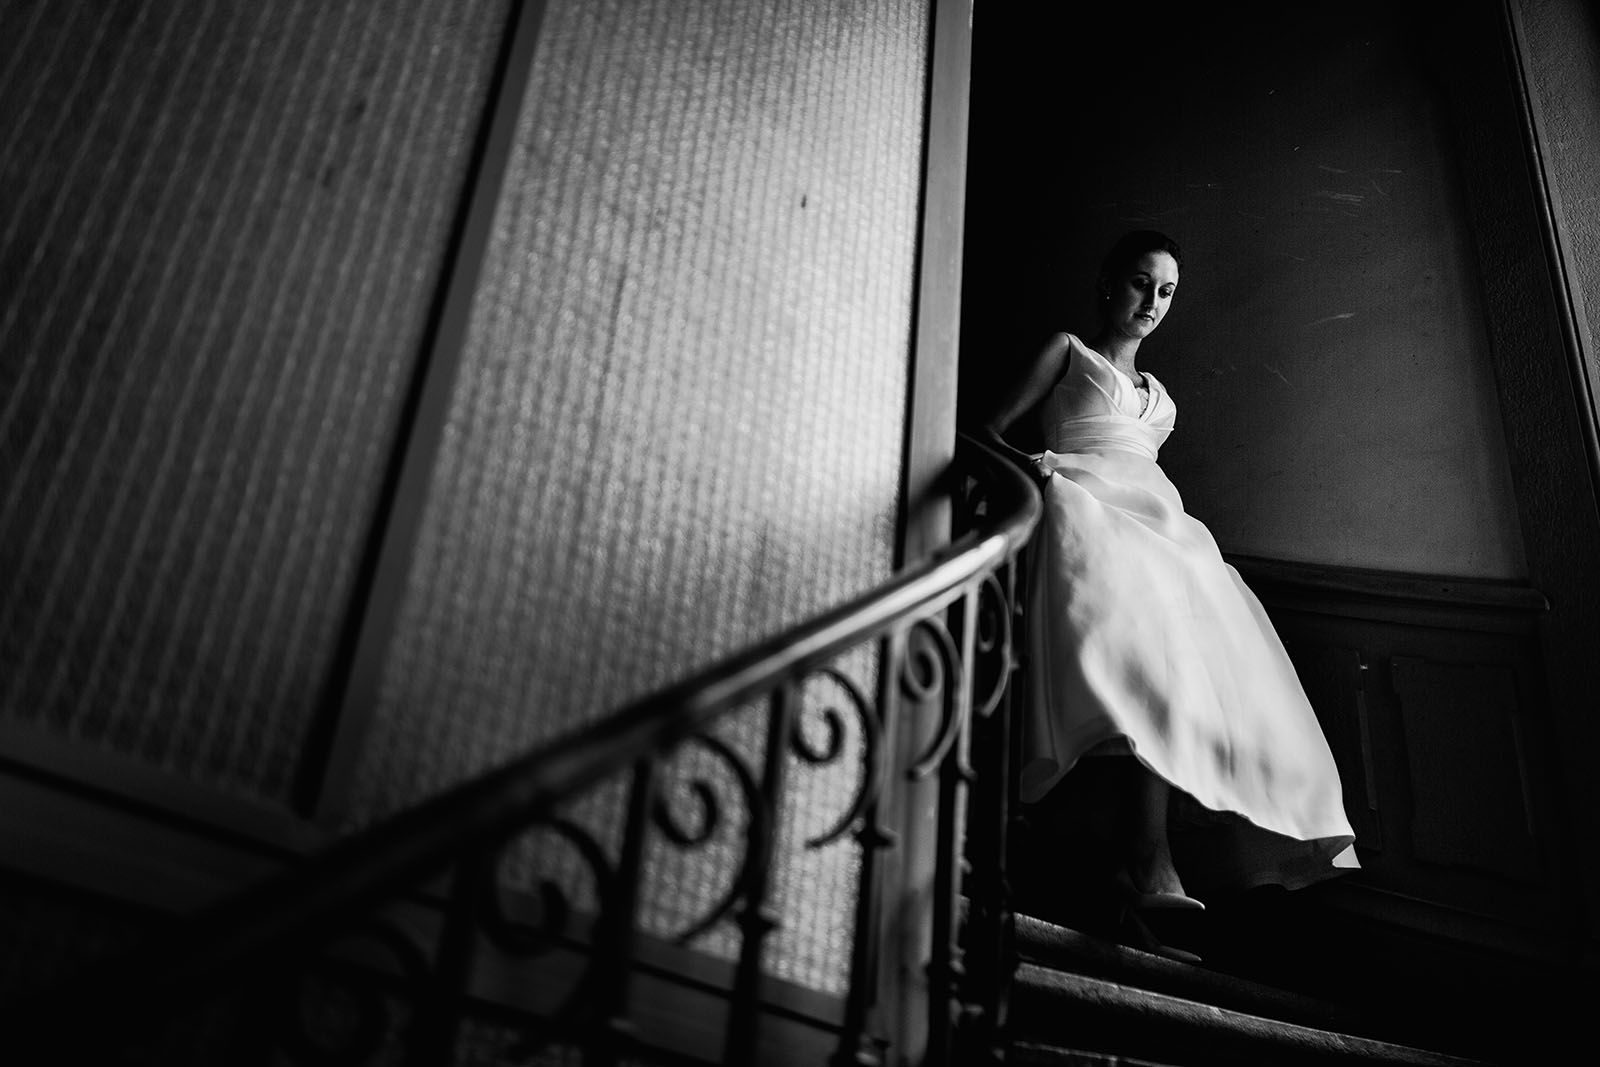 Photographe de mariage à Lyon. La descente d'escalier de la mariée